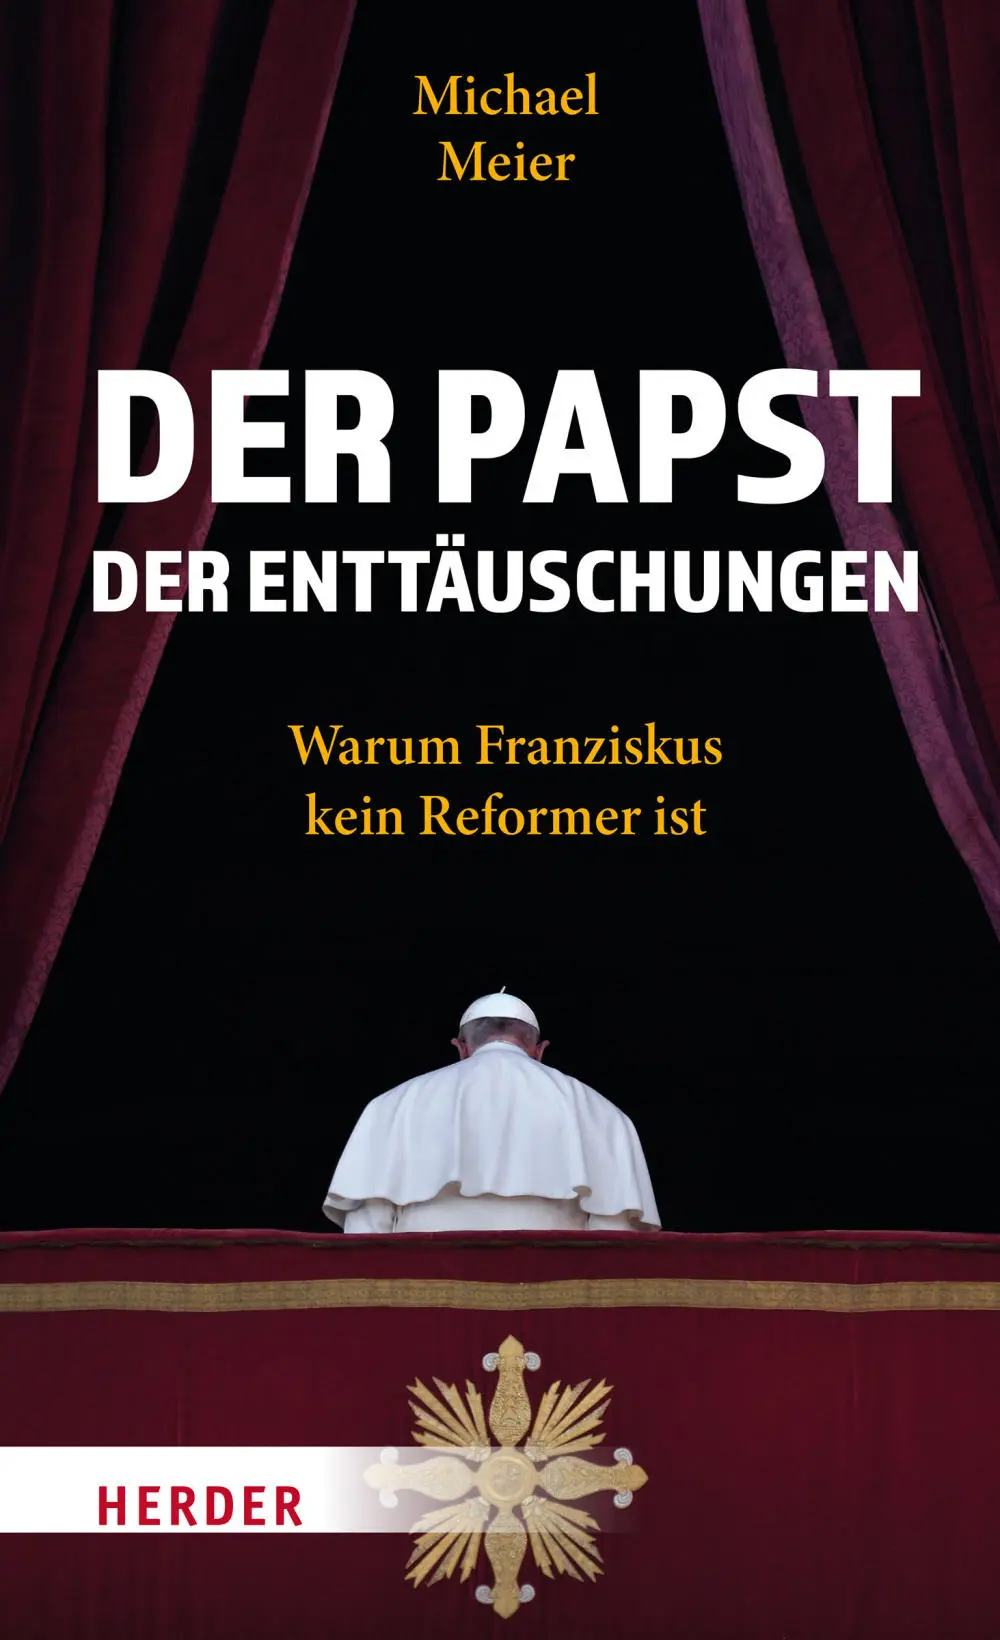 Buchcover von "Der Papst der Enttäuschungen" von Michael Meier